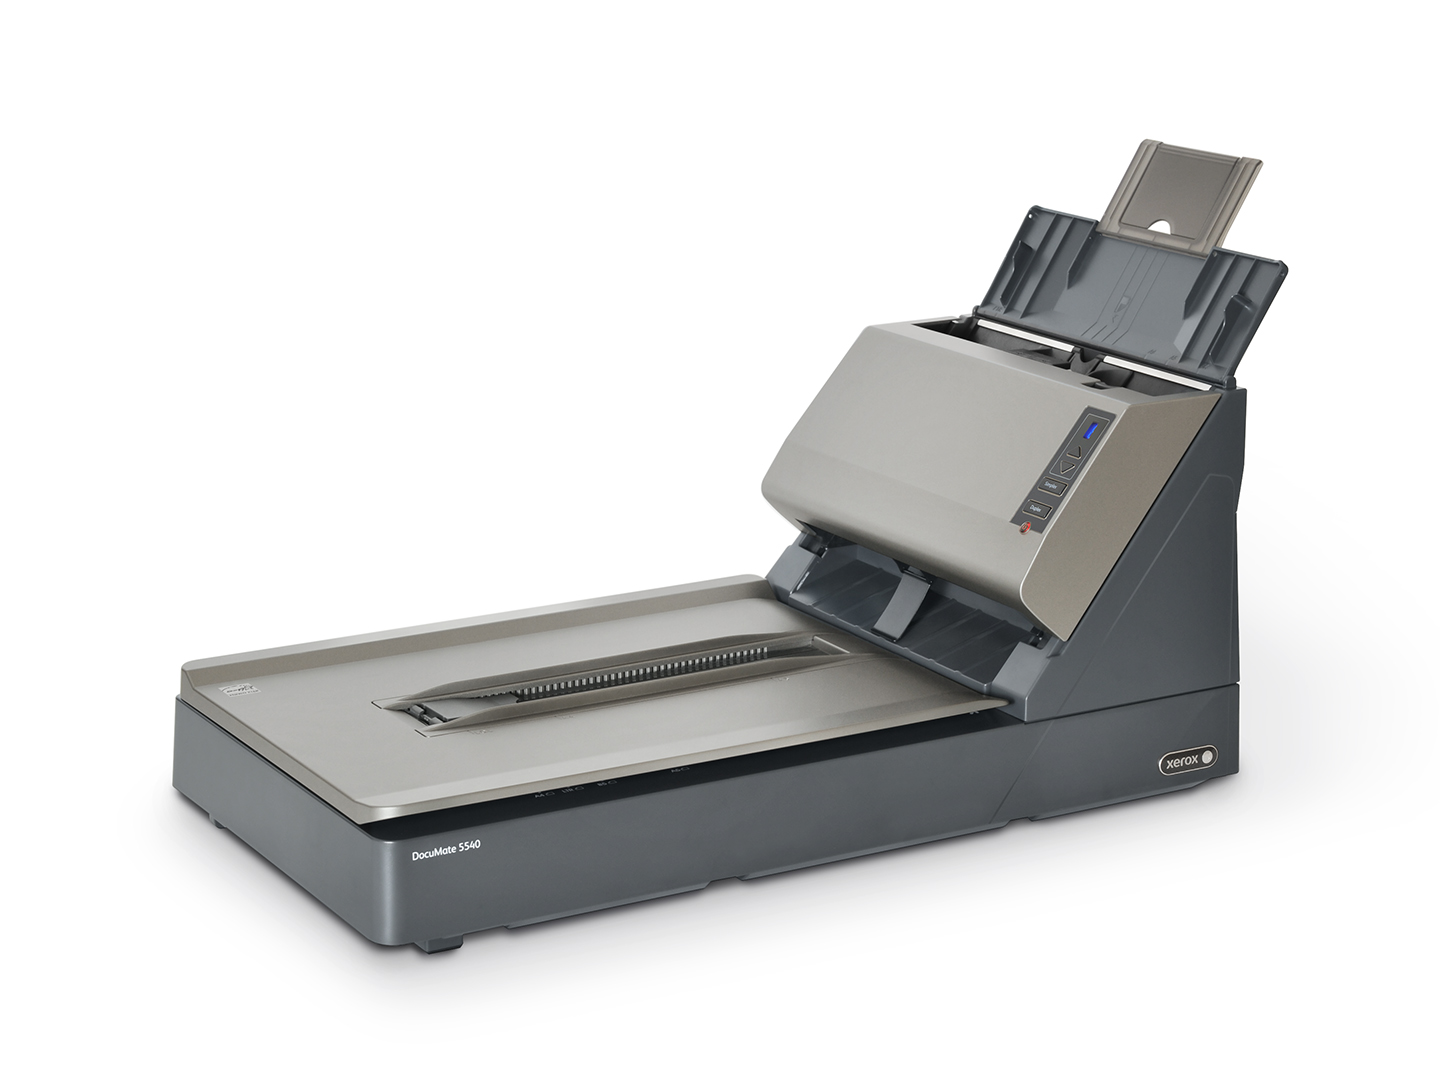 Автоподатчики бумаги. Сканер Xerox DOCUMATE 5540. Сканер Xerox DOCUMATE. Сканер Xerox 100n03033. Сканер Xerox DOCUMATE 510.